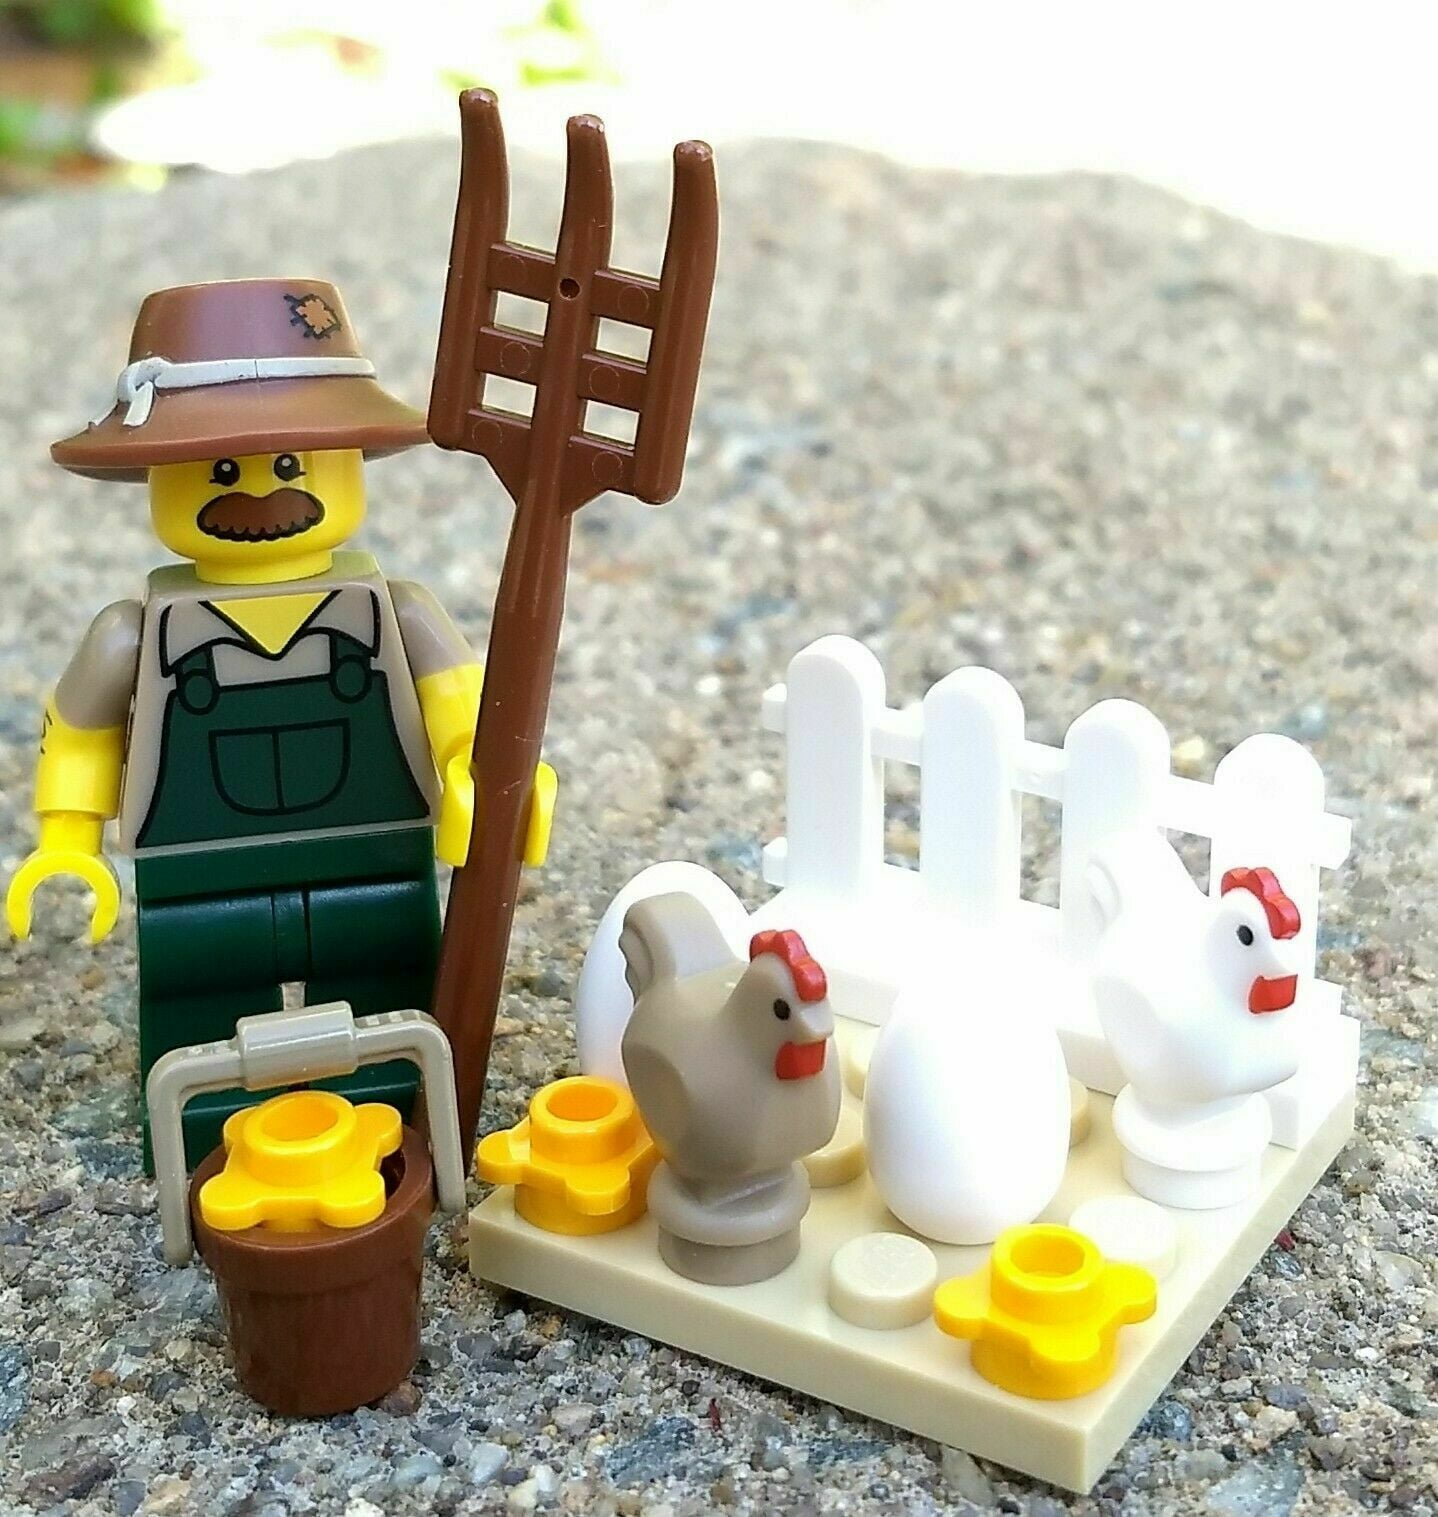 LEGO 5 NEW FARMER MINIFIGURES FARMER BOY GIRL CHICKEN AXE TOOLS MORE 